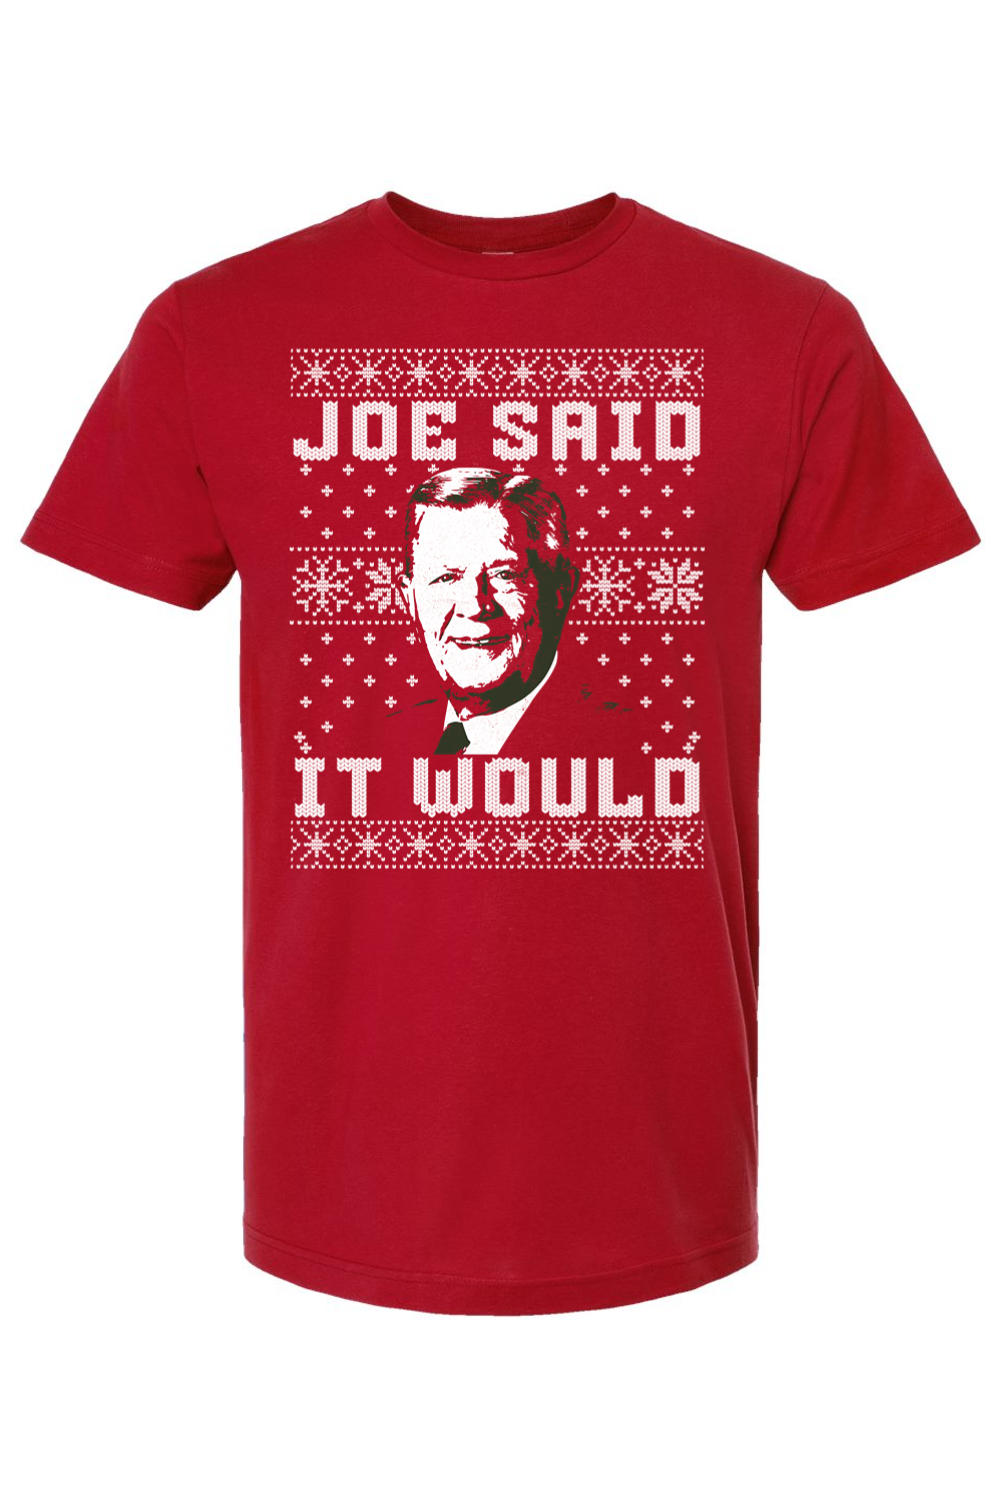 Joe Said it Would - Ugly Christmas Sweater Tee - Yinzylvania